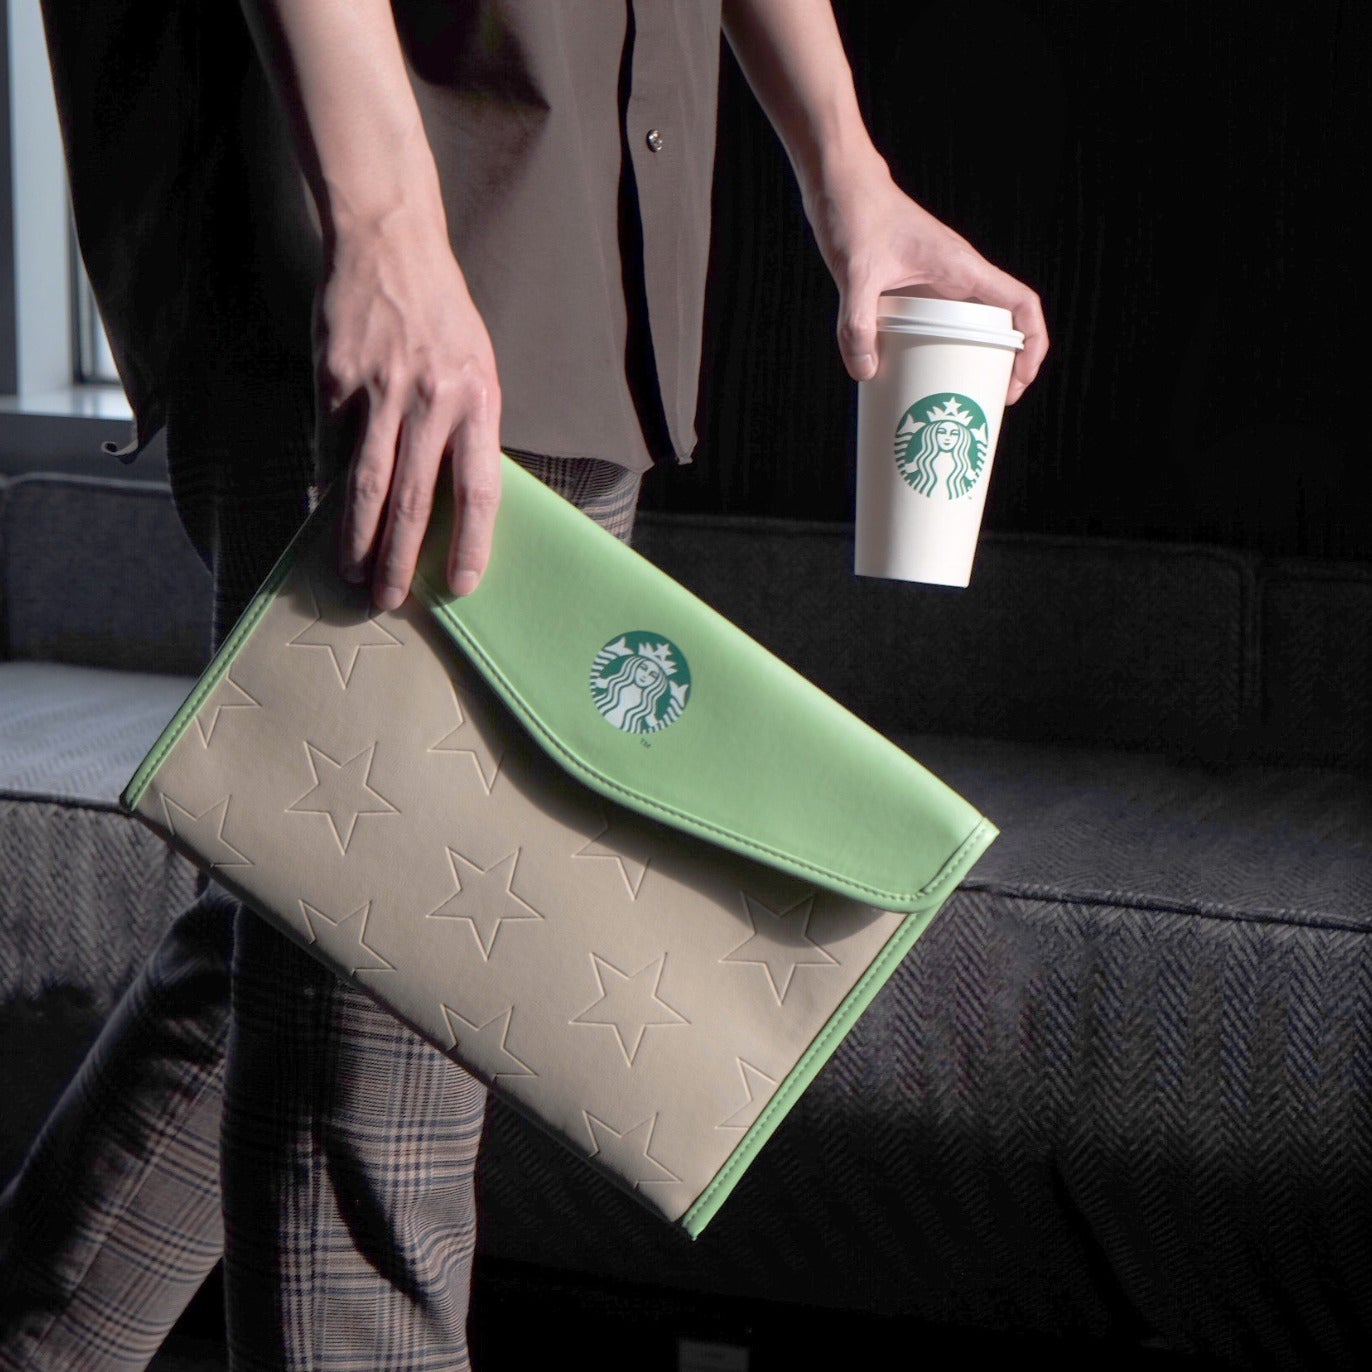 กระเป๋า Starbucks